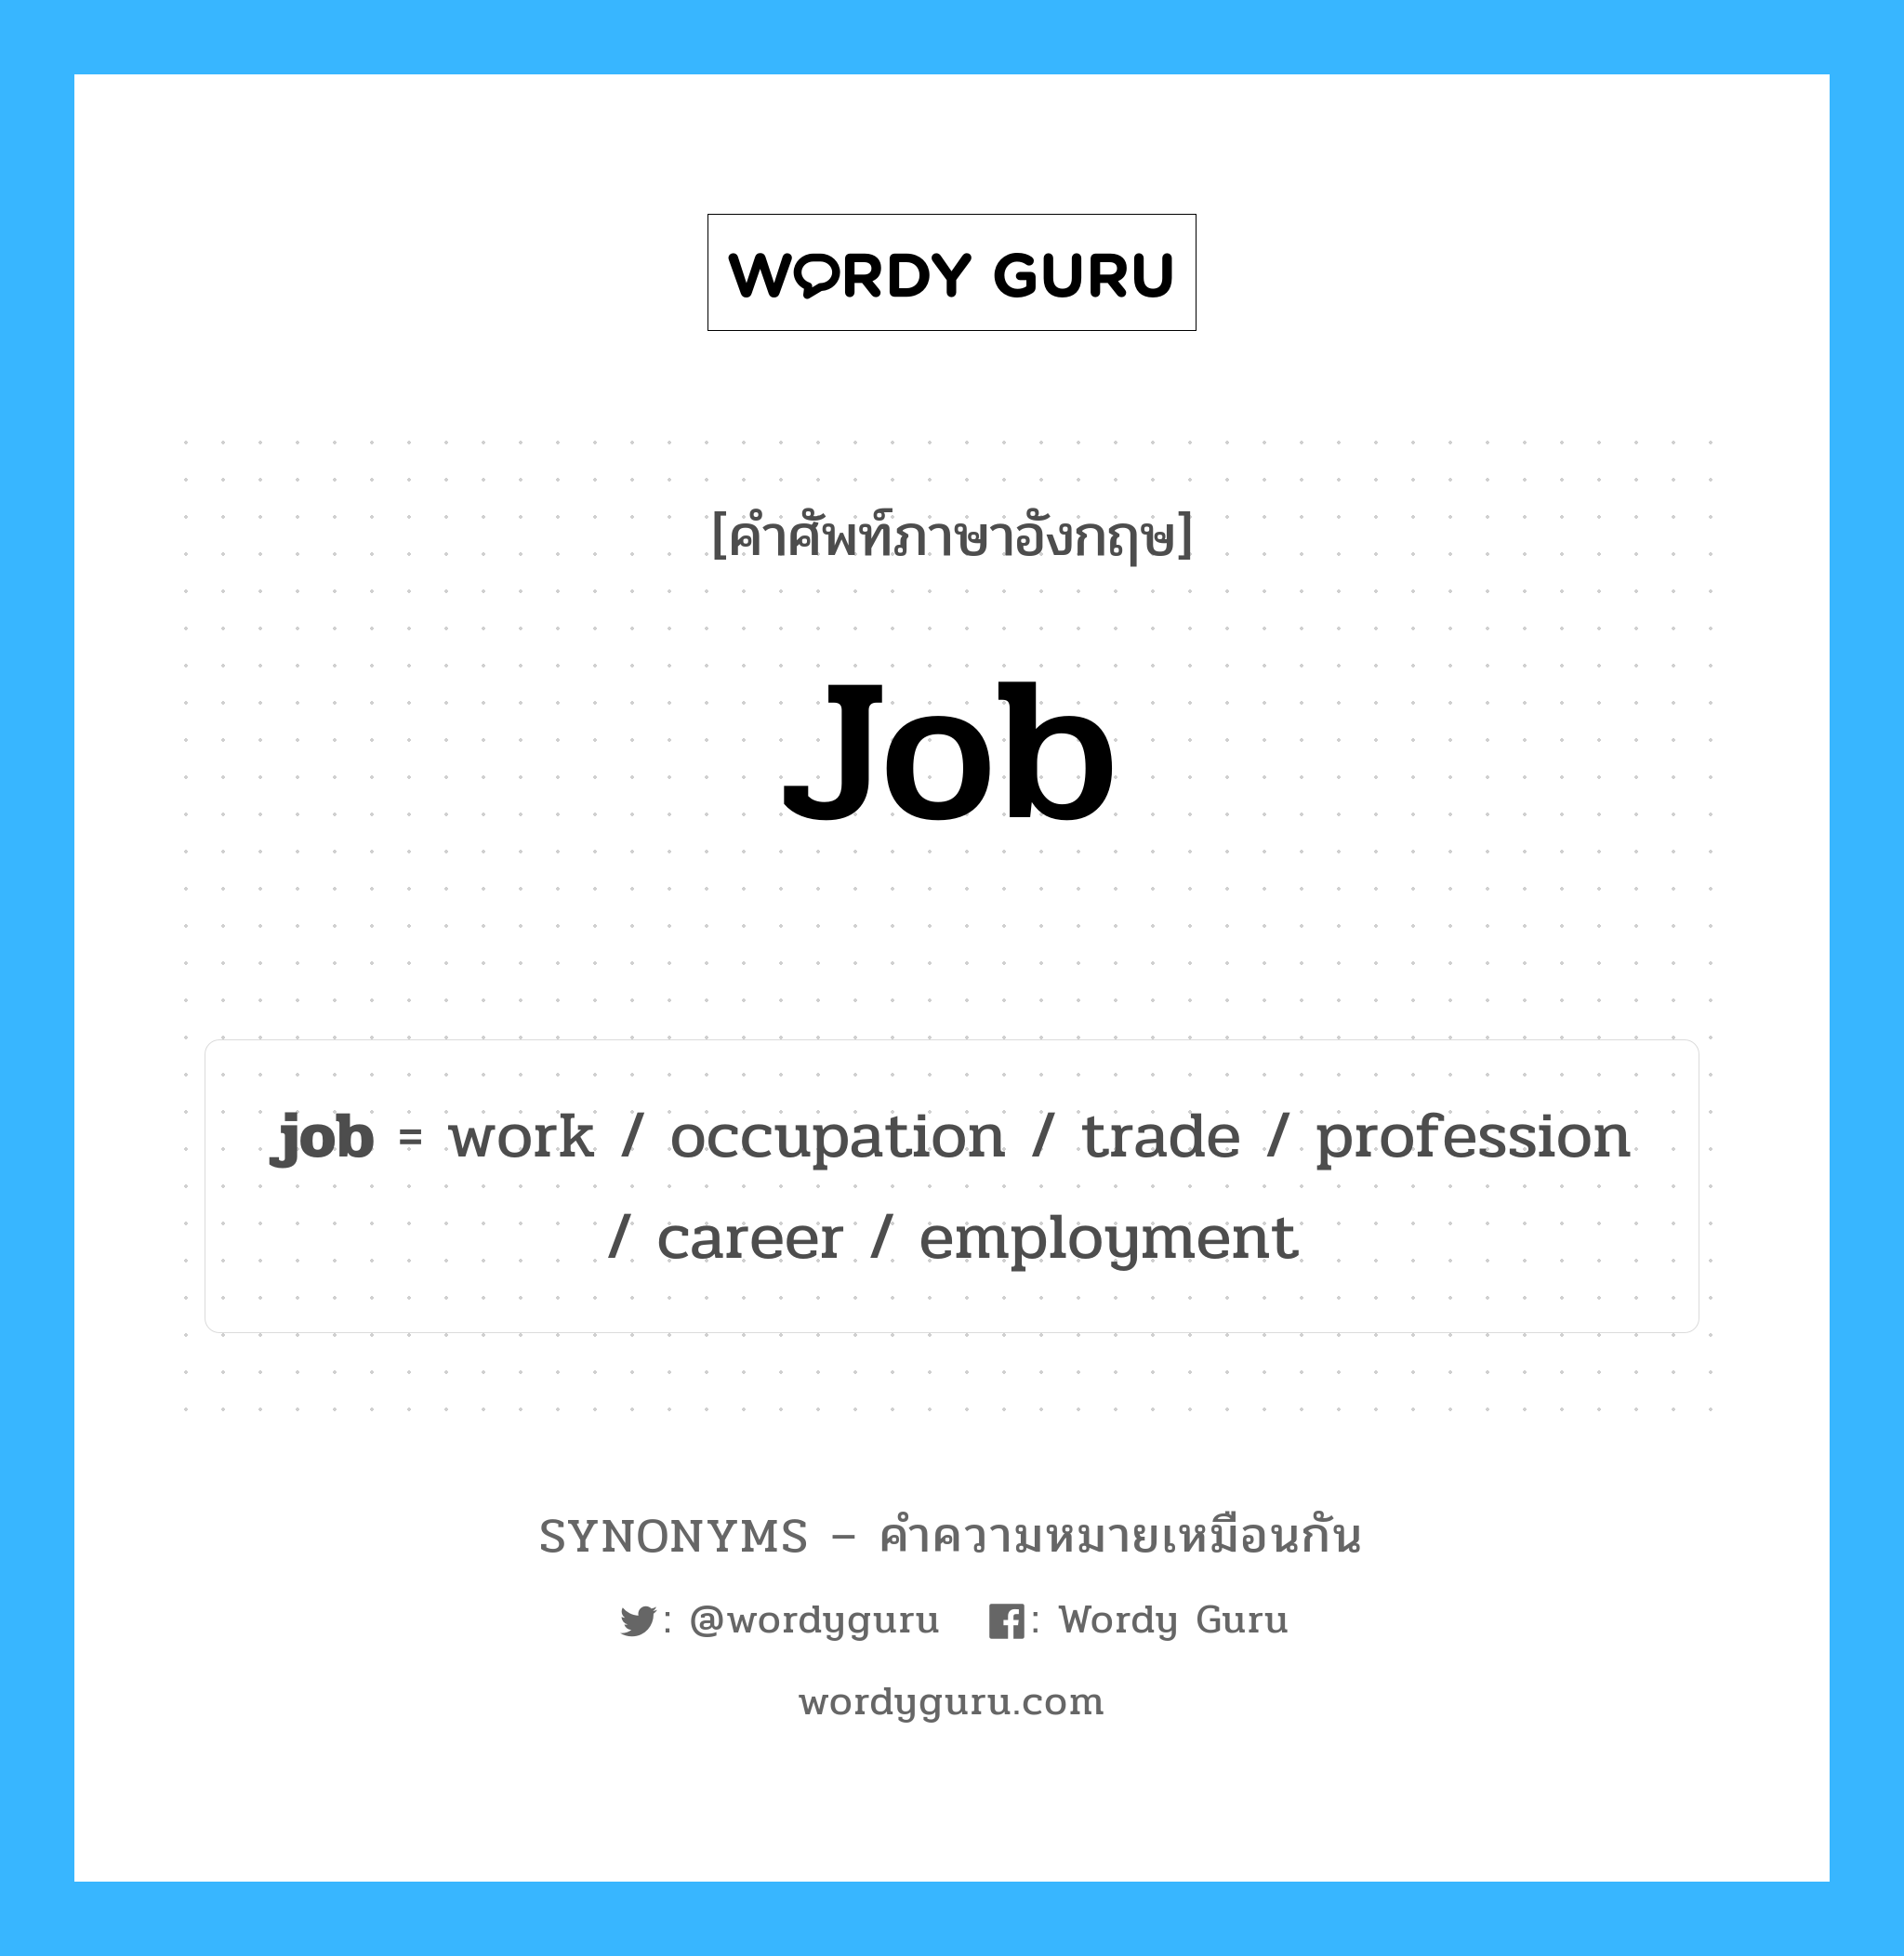 job เป็นหนึ่งใน work และมีคำอื่น ๆ อีกดังนี้, คำศัพท์ภาษาอังกฤษ job ความหมายคล้ายกันกับ work แปลว่า ทำงาน หมวด work